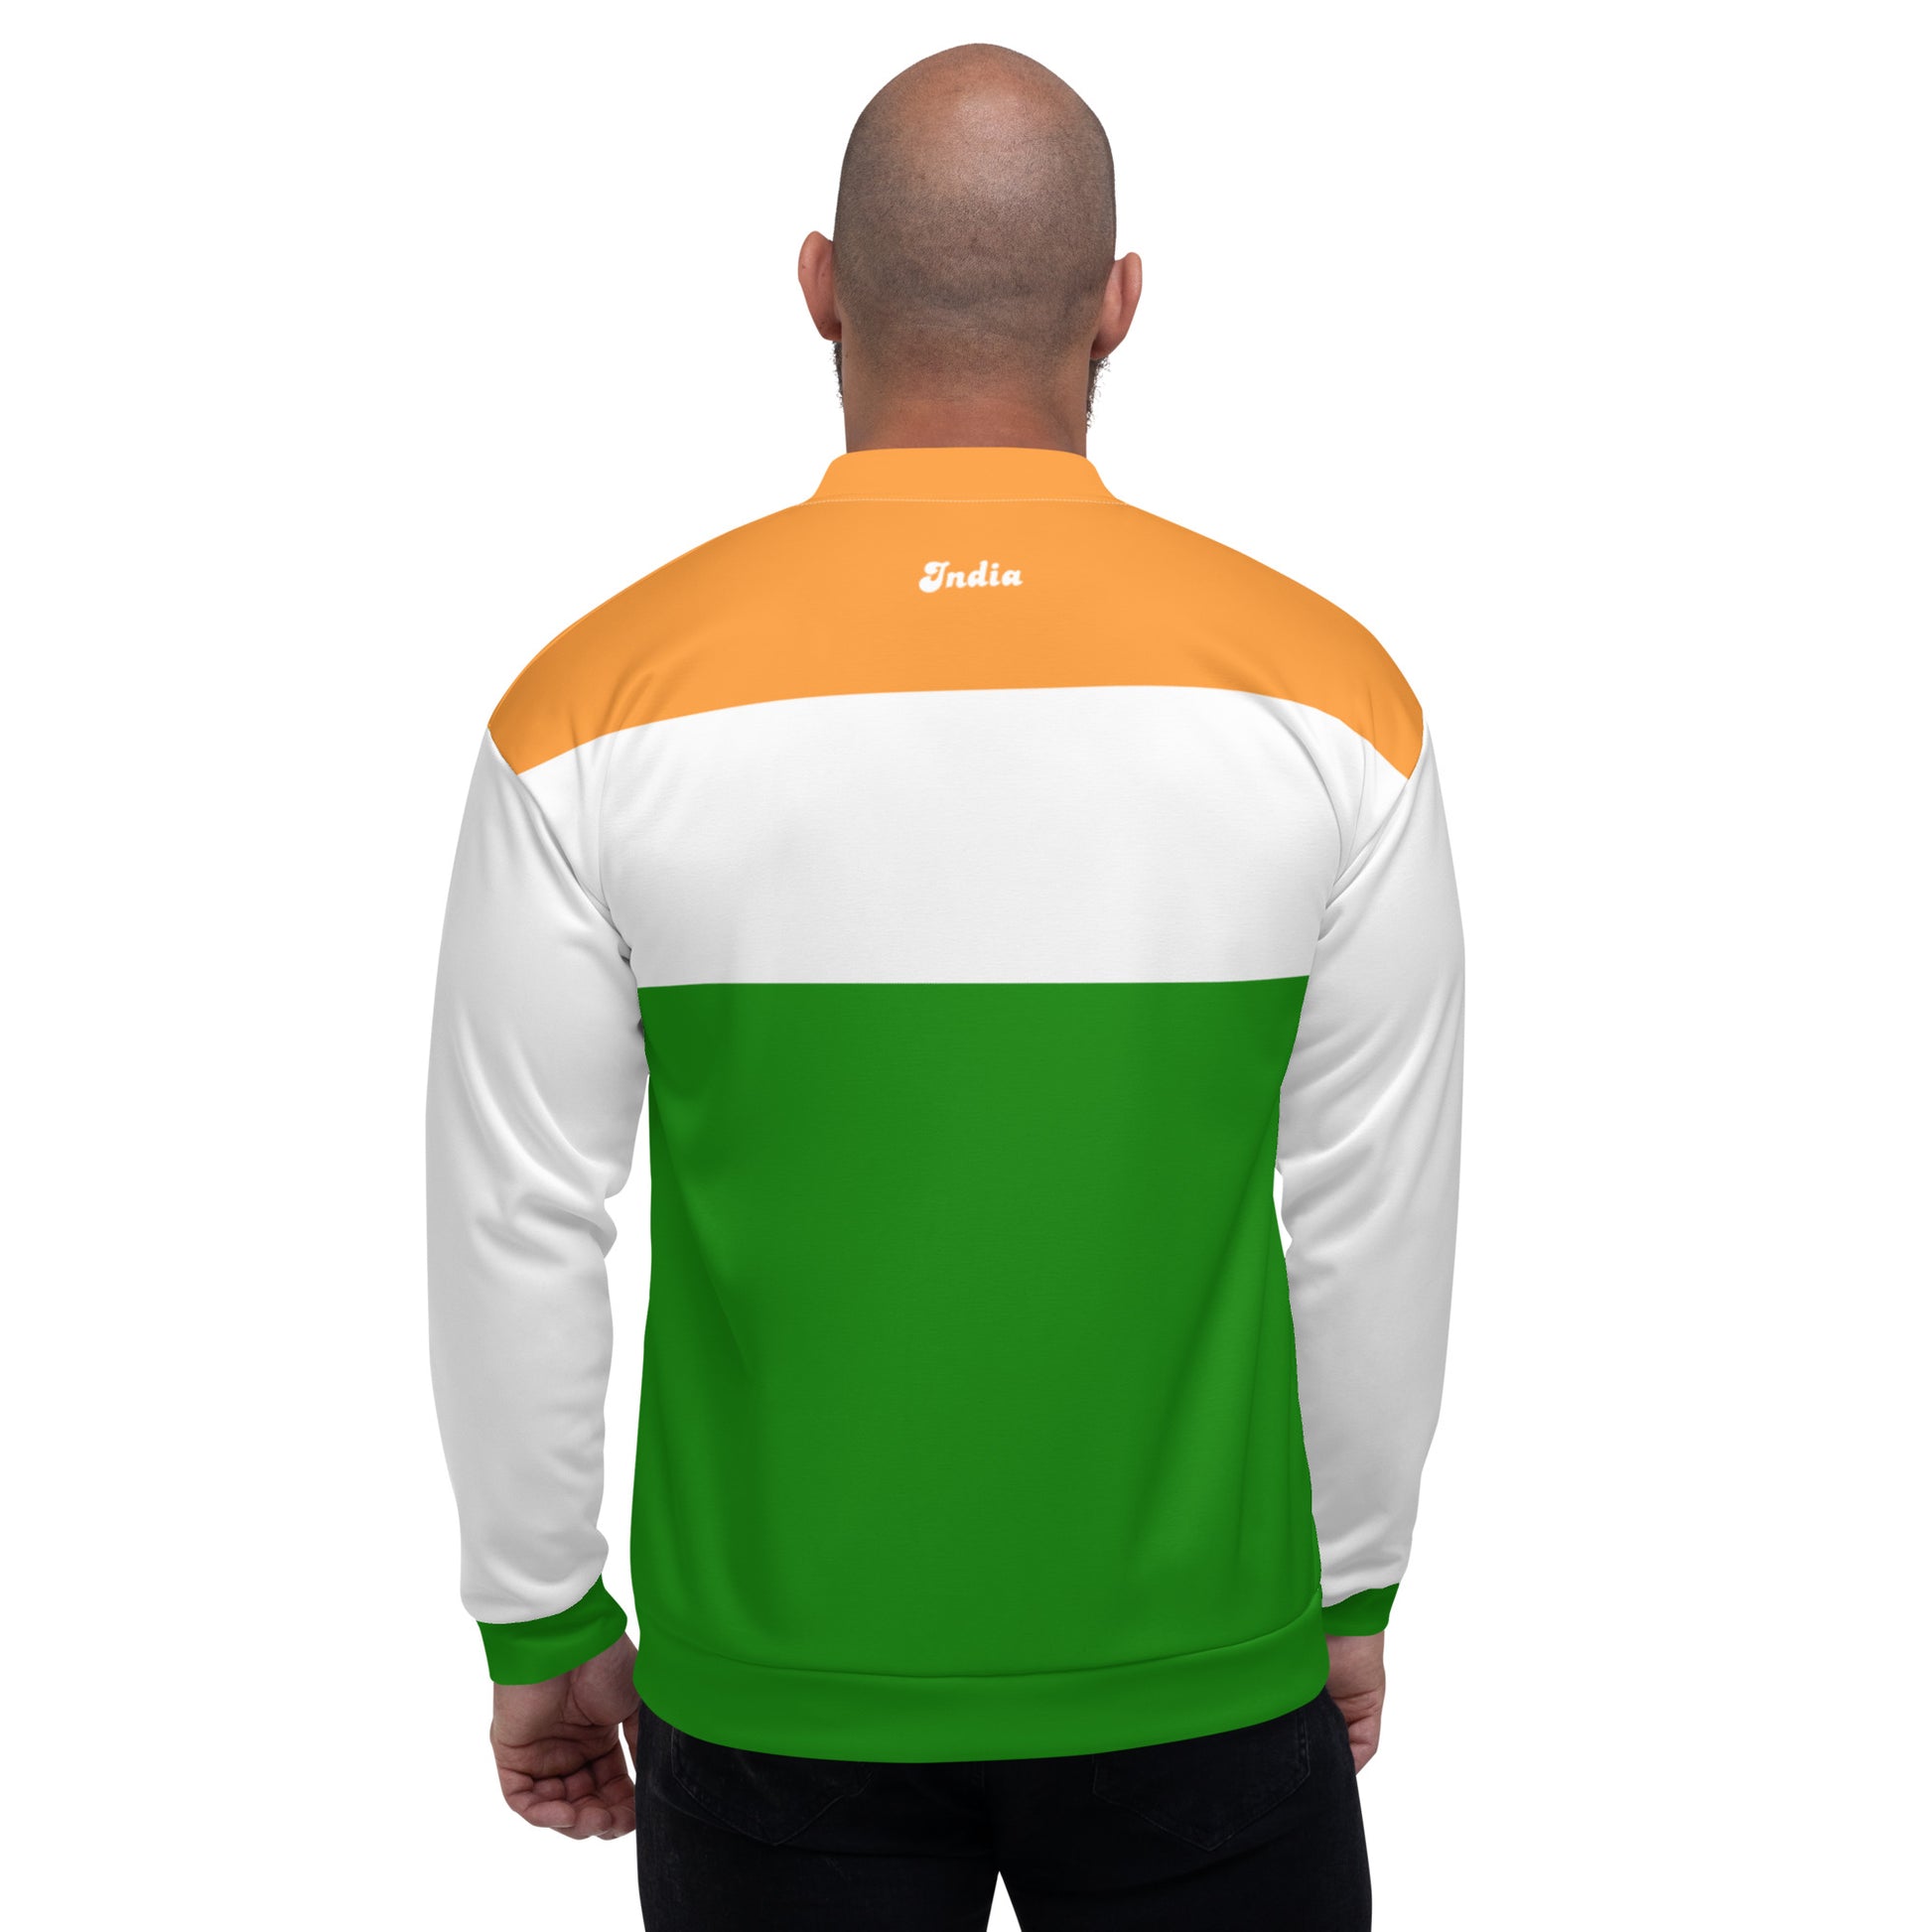 india jacket back side